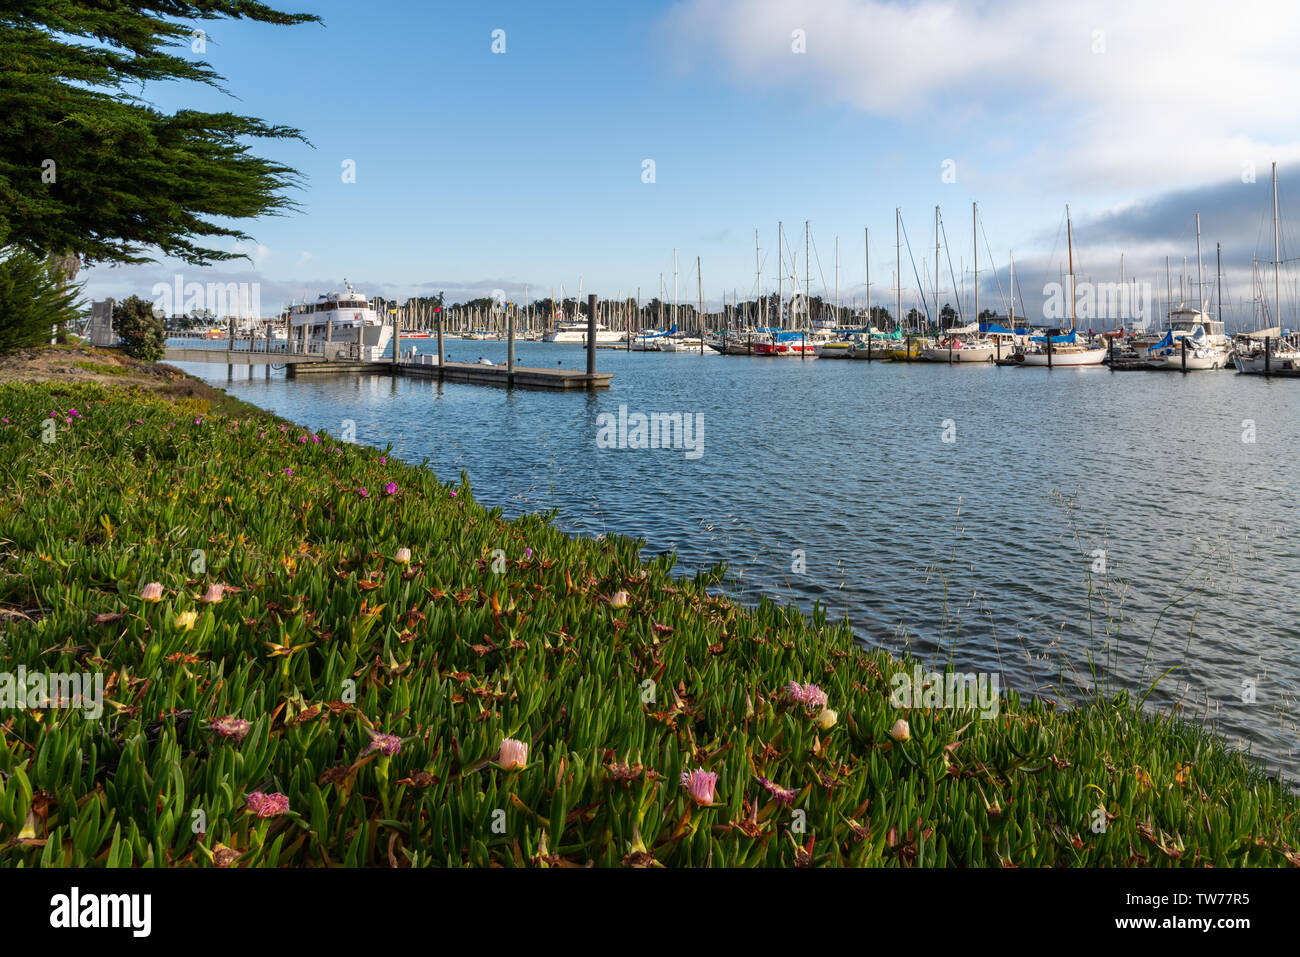 Boats at marina. Berkeley, California, USA. Stock Photo